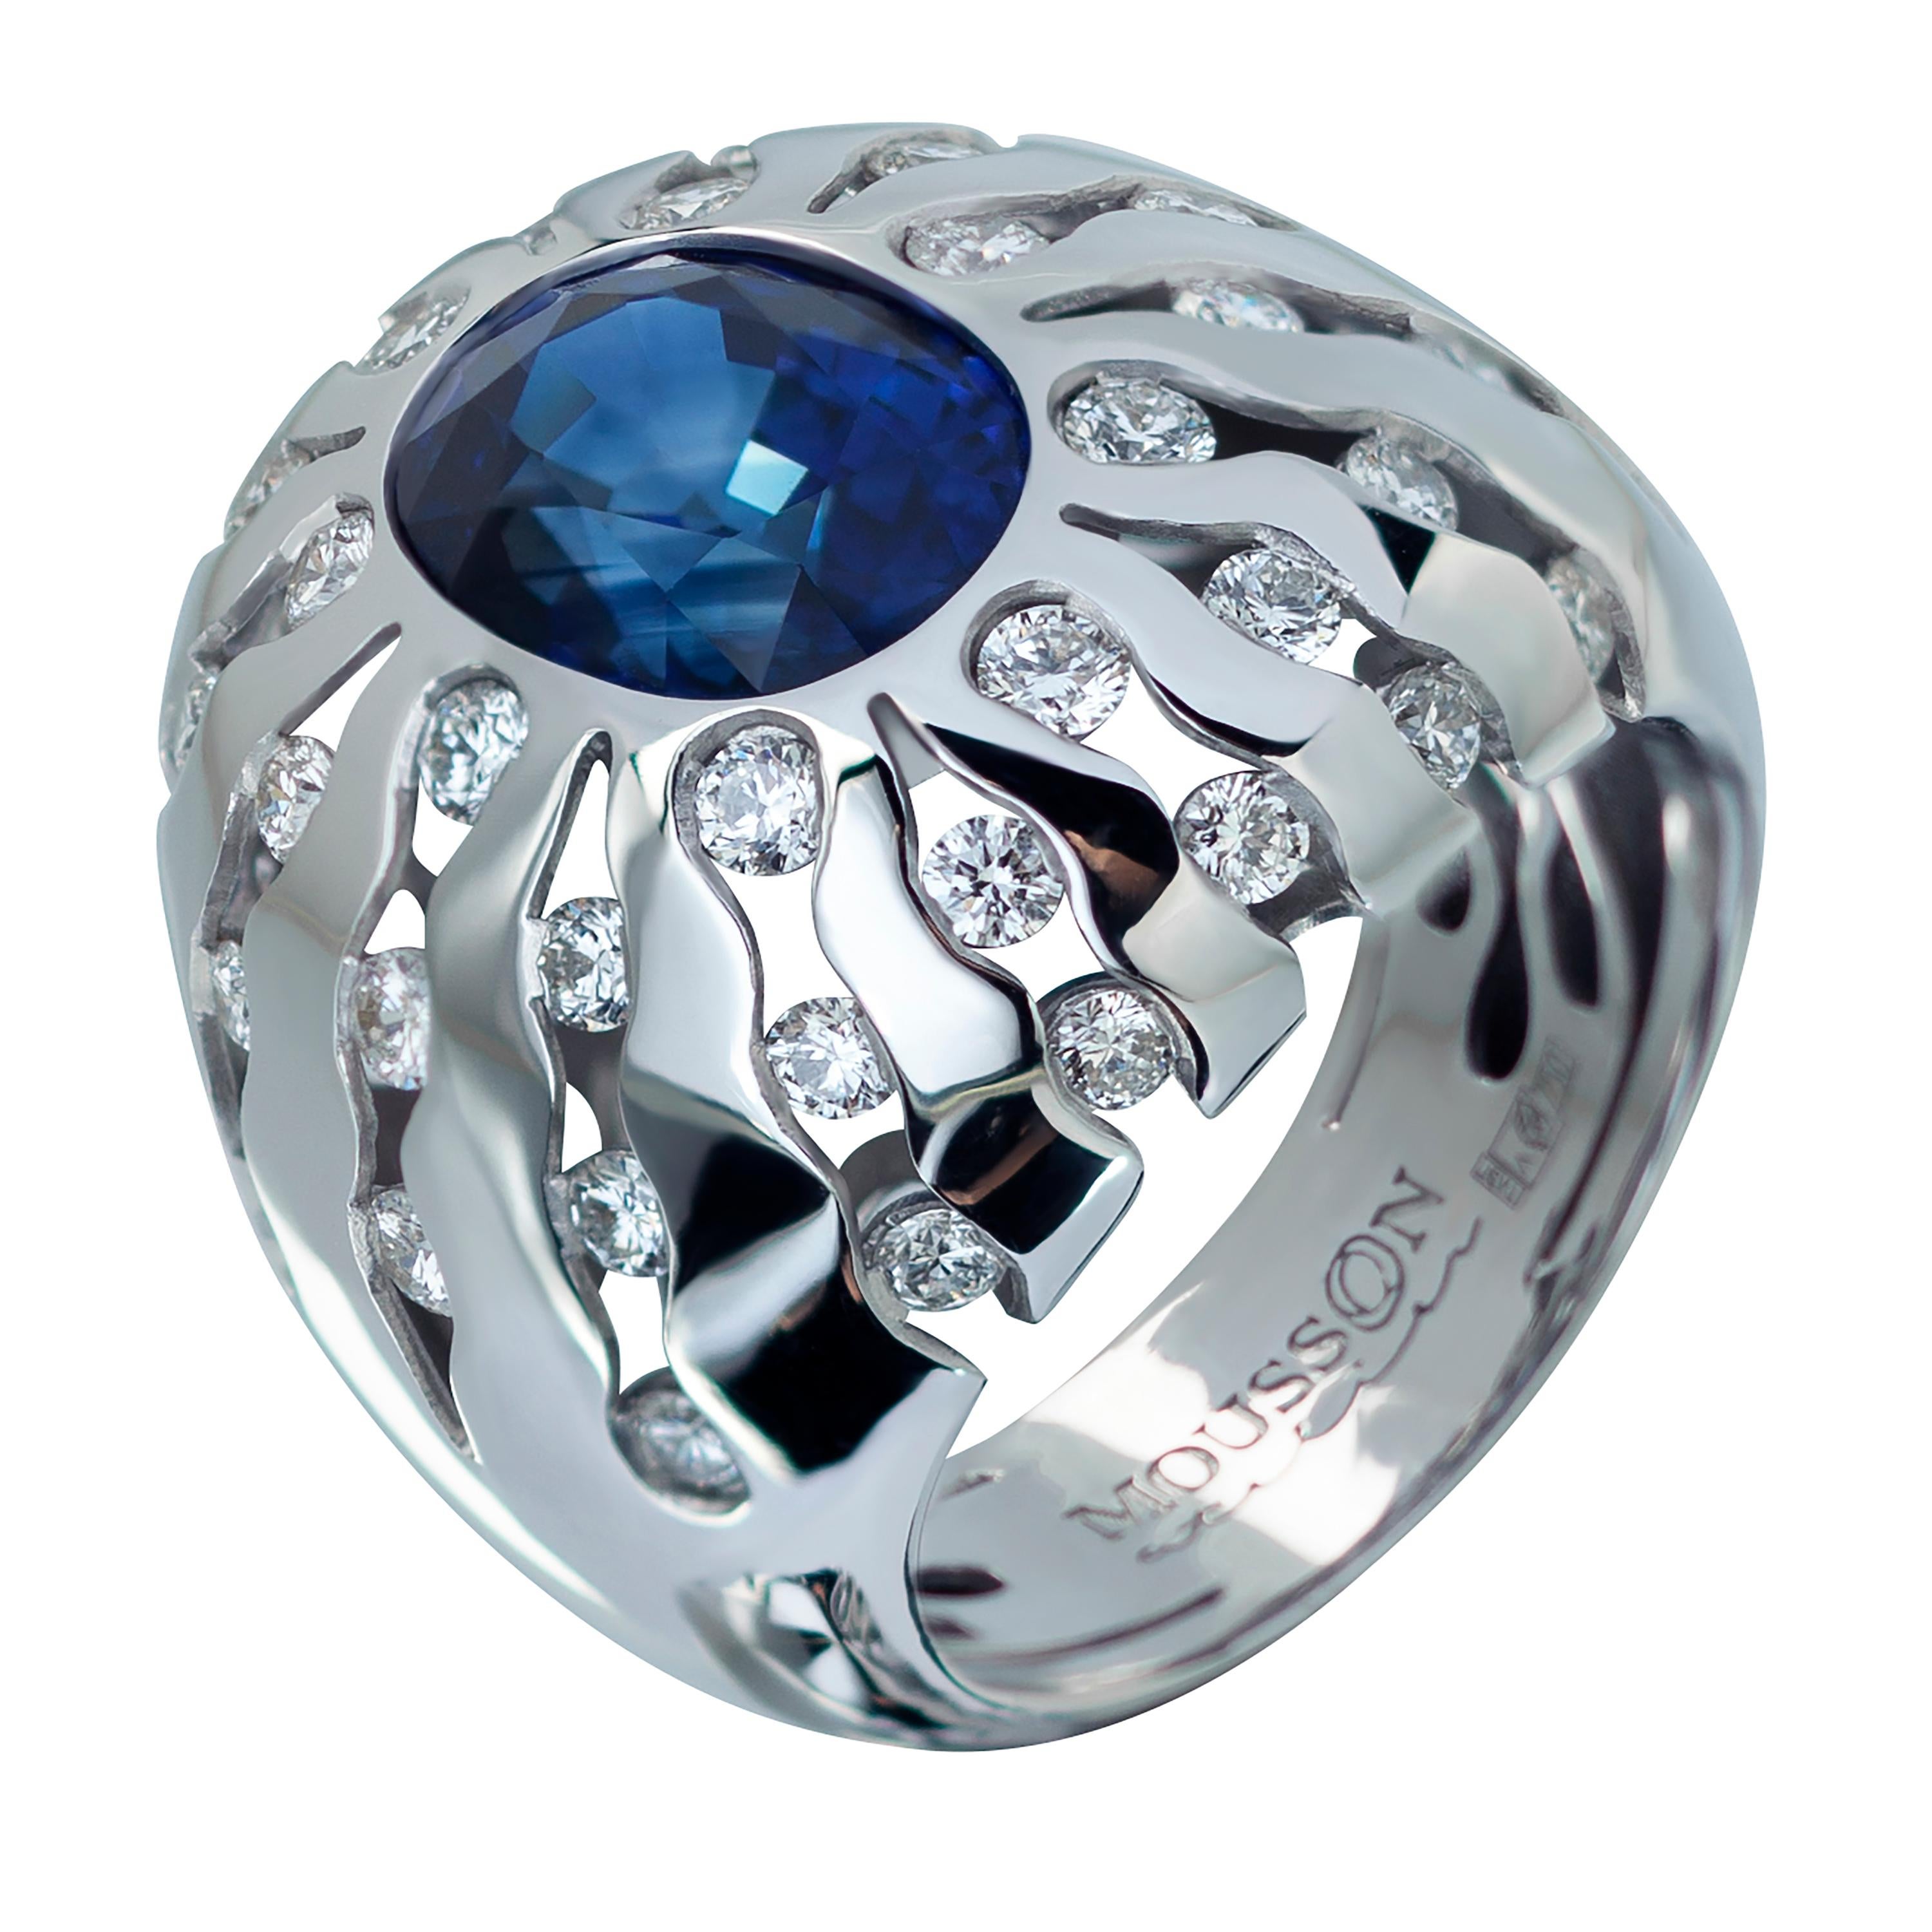 GRS-zertifiziert Königsblauer Saphir Diamanten 18 Karat Weißgold Suite
Obwohl diese königsblauen Saphire mit einem Gesamtgewicht von 6,03 Karat im Ring und 8,03 Karat in den Ohrringen für sich allein stehen, erhöhen sie in Kombination mit funkelnden